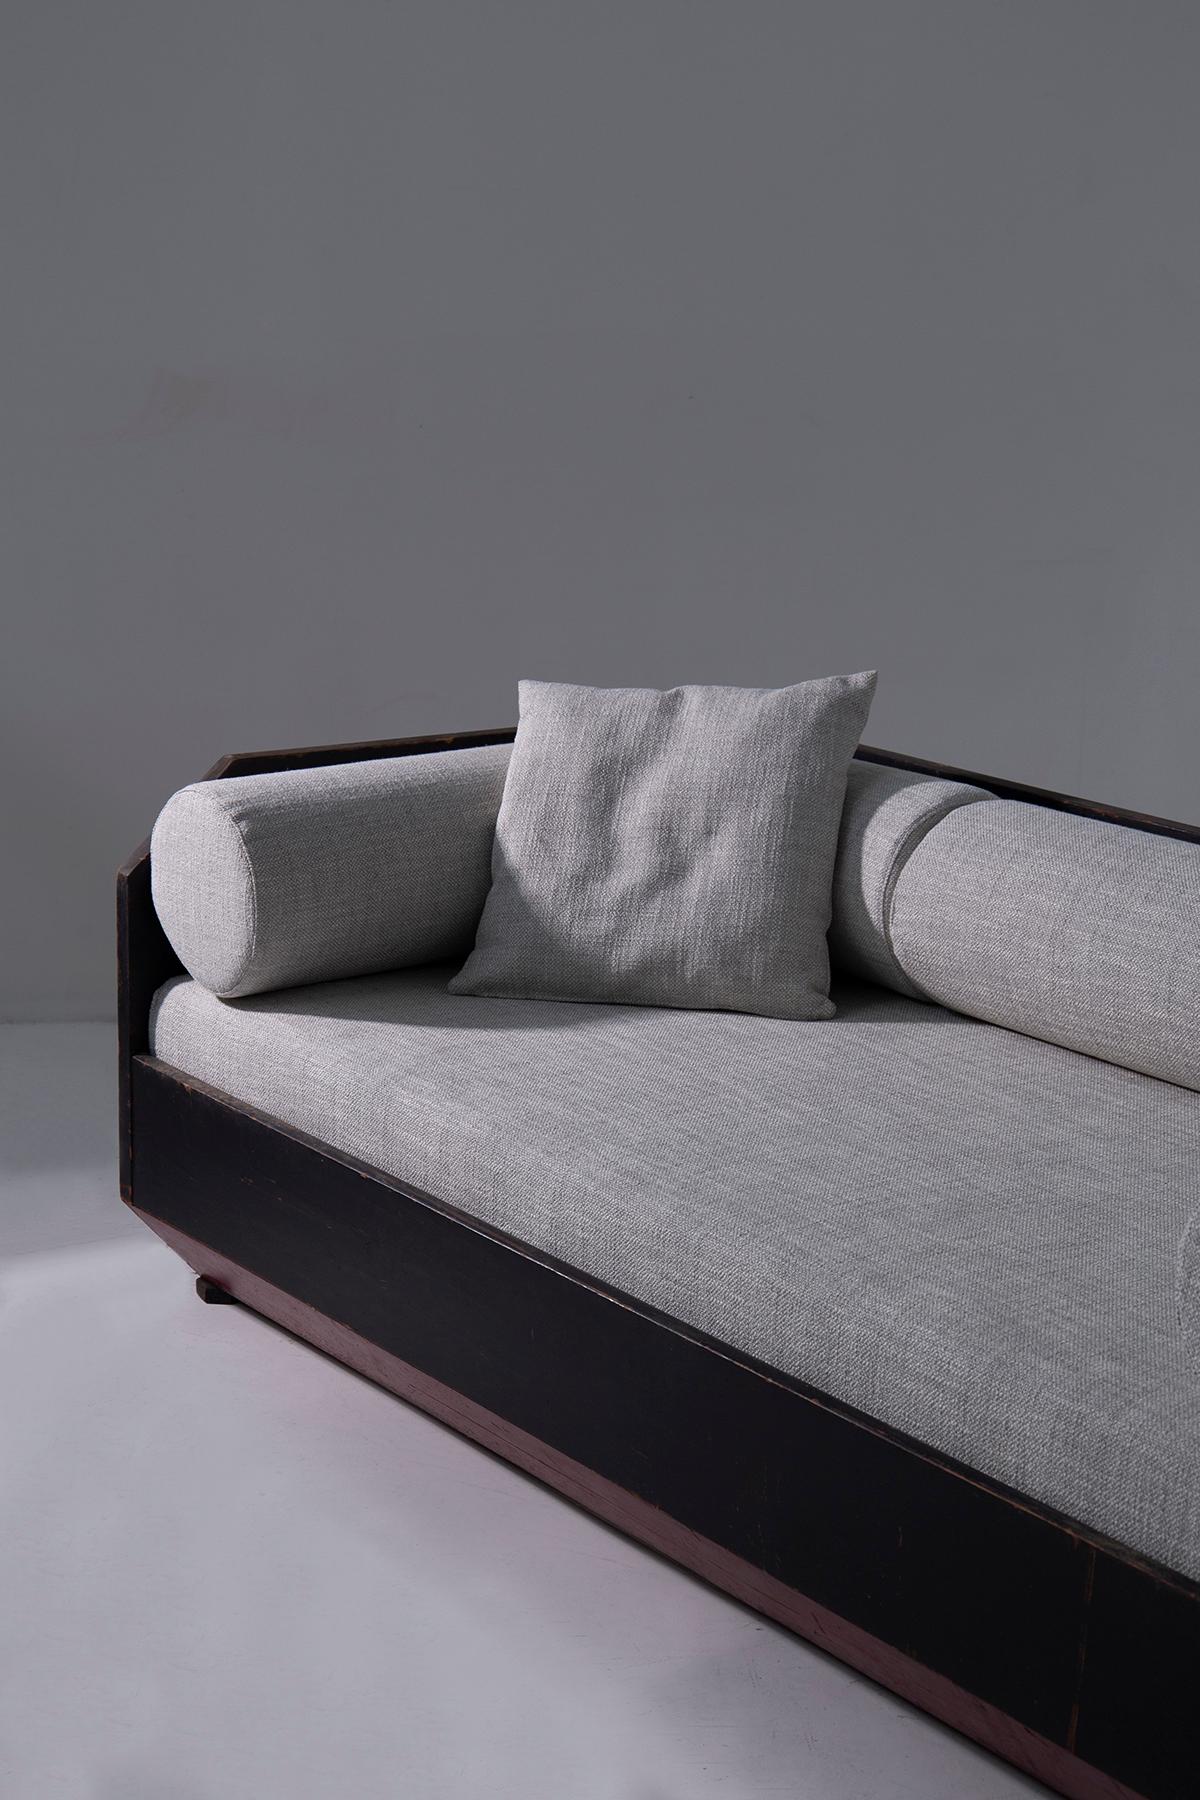 Italian Futurist-era geometric sofa with cotton fabric In Good Condition For Sale In Milano, IT